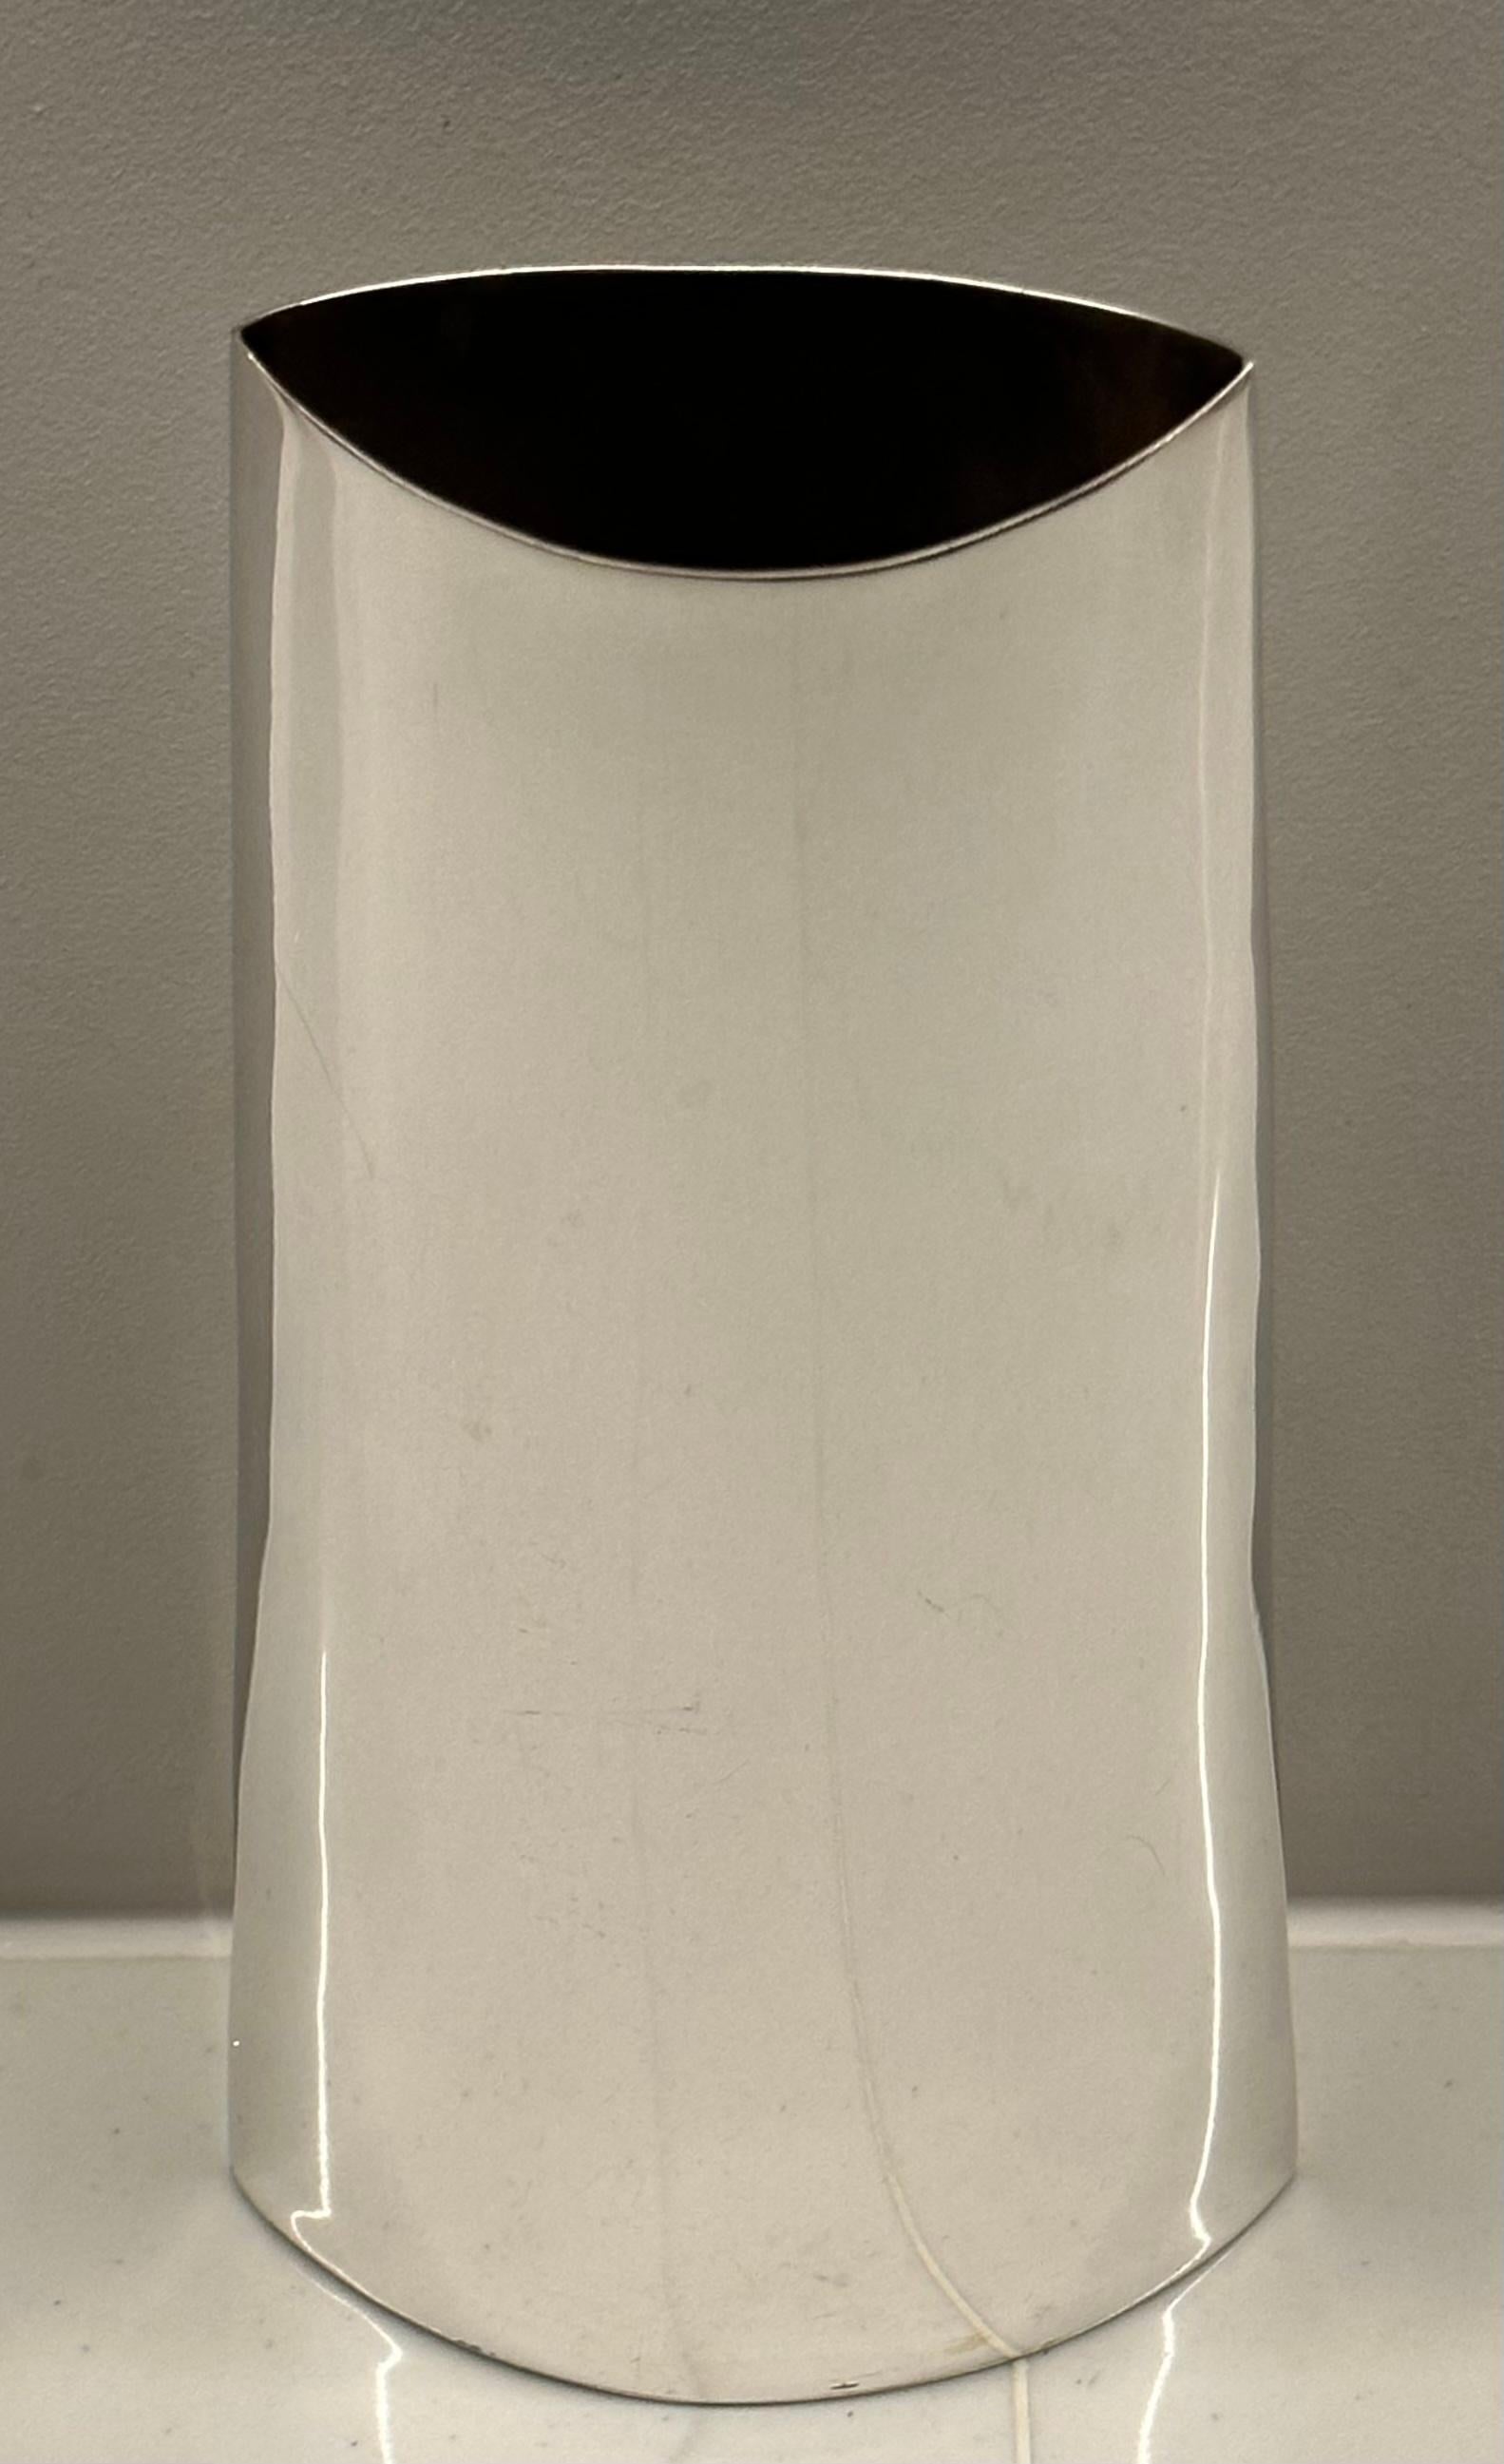 Vase italien en métal argenté des années 1970, de forme incurvée, avec une base plus large et un sommet plus étroit. Il présente une surface lisse et polie et un design simple et élégant. 

Le vase a une ouverture évasée de 4,5 cm de large et 8,5 cm